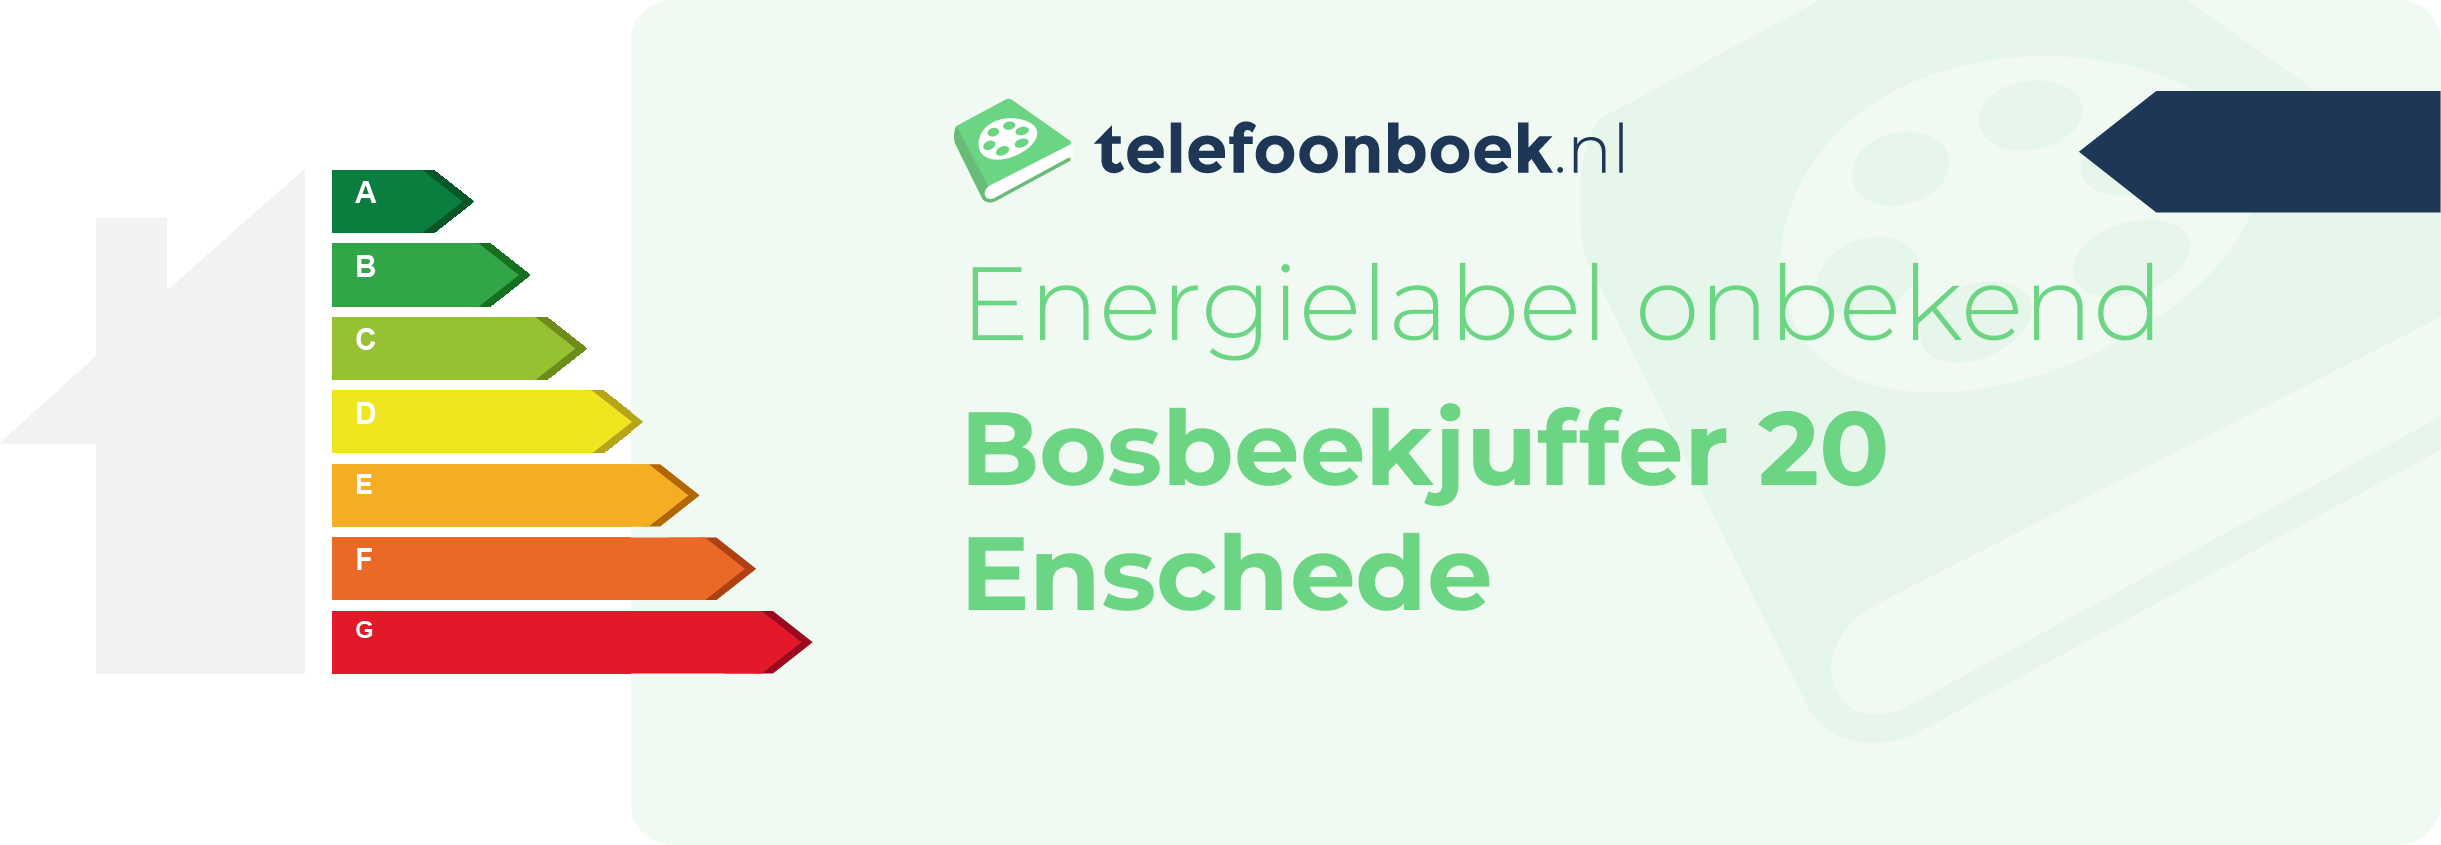 Energielabel Bosbeekjuffer 20 Enschede